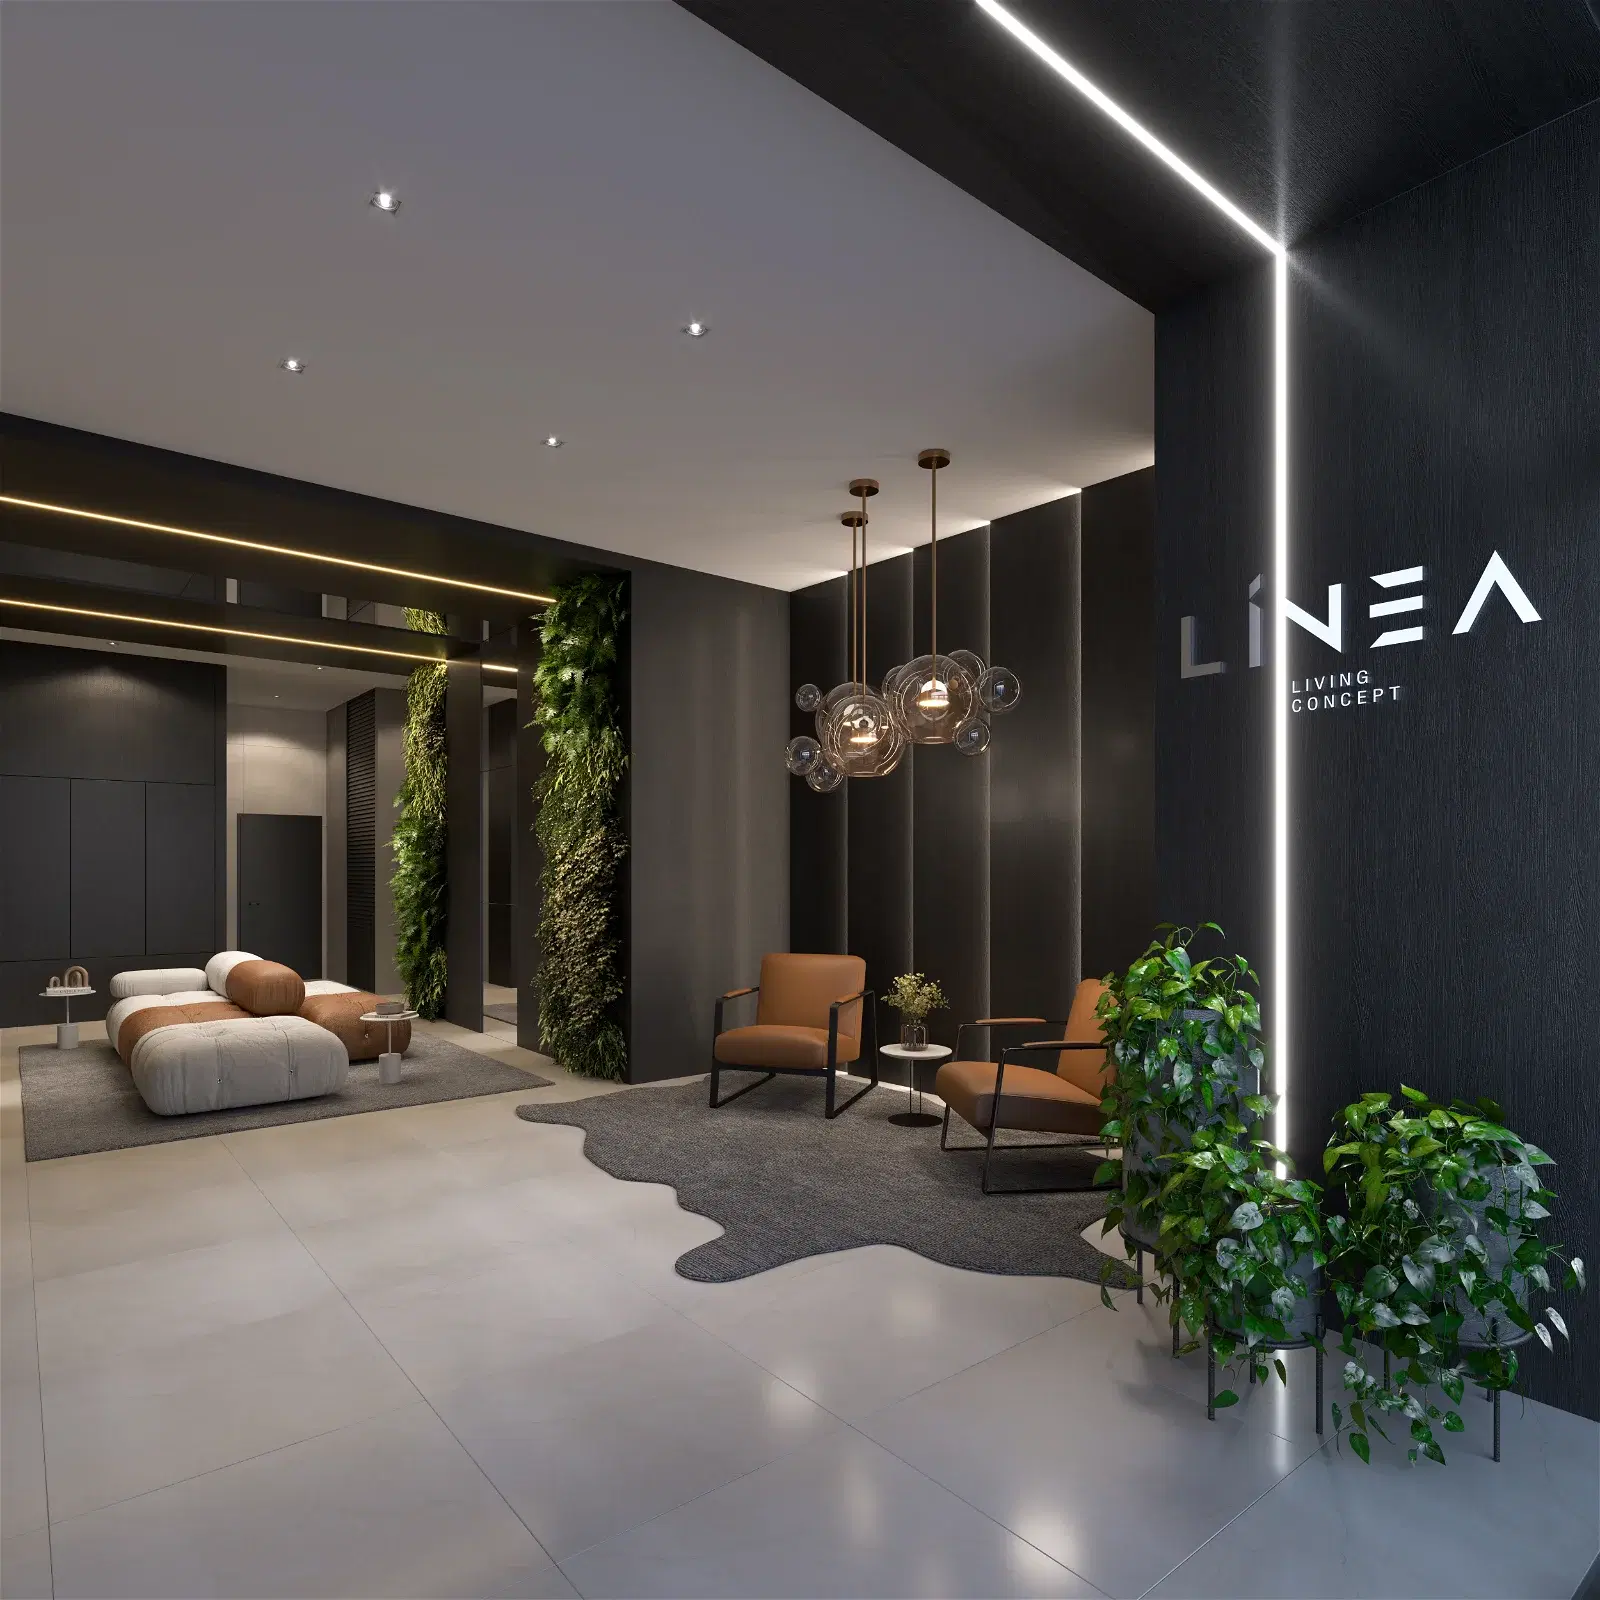 Venda de apartamento no Linea living concept